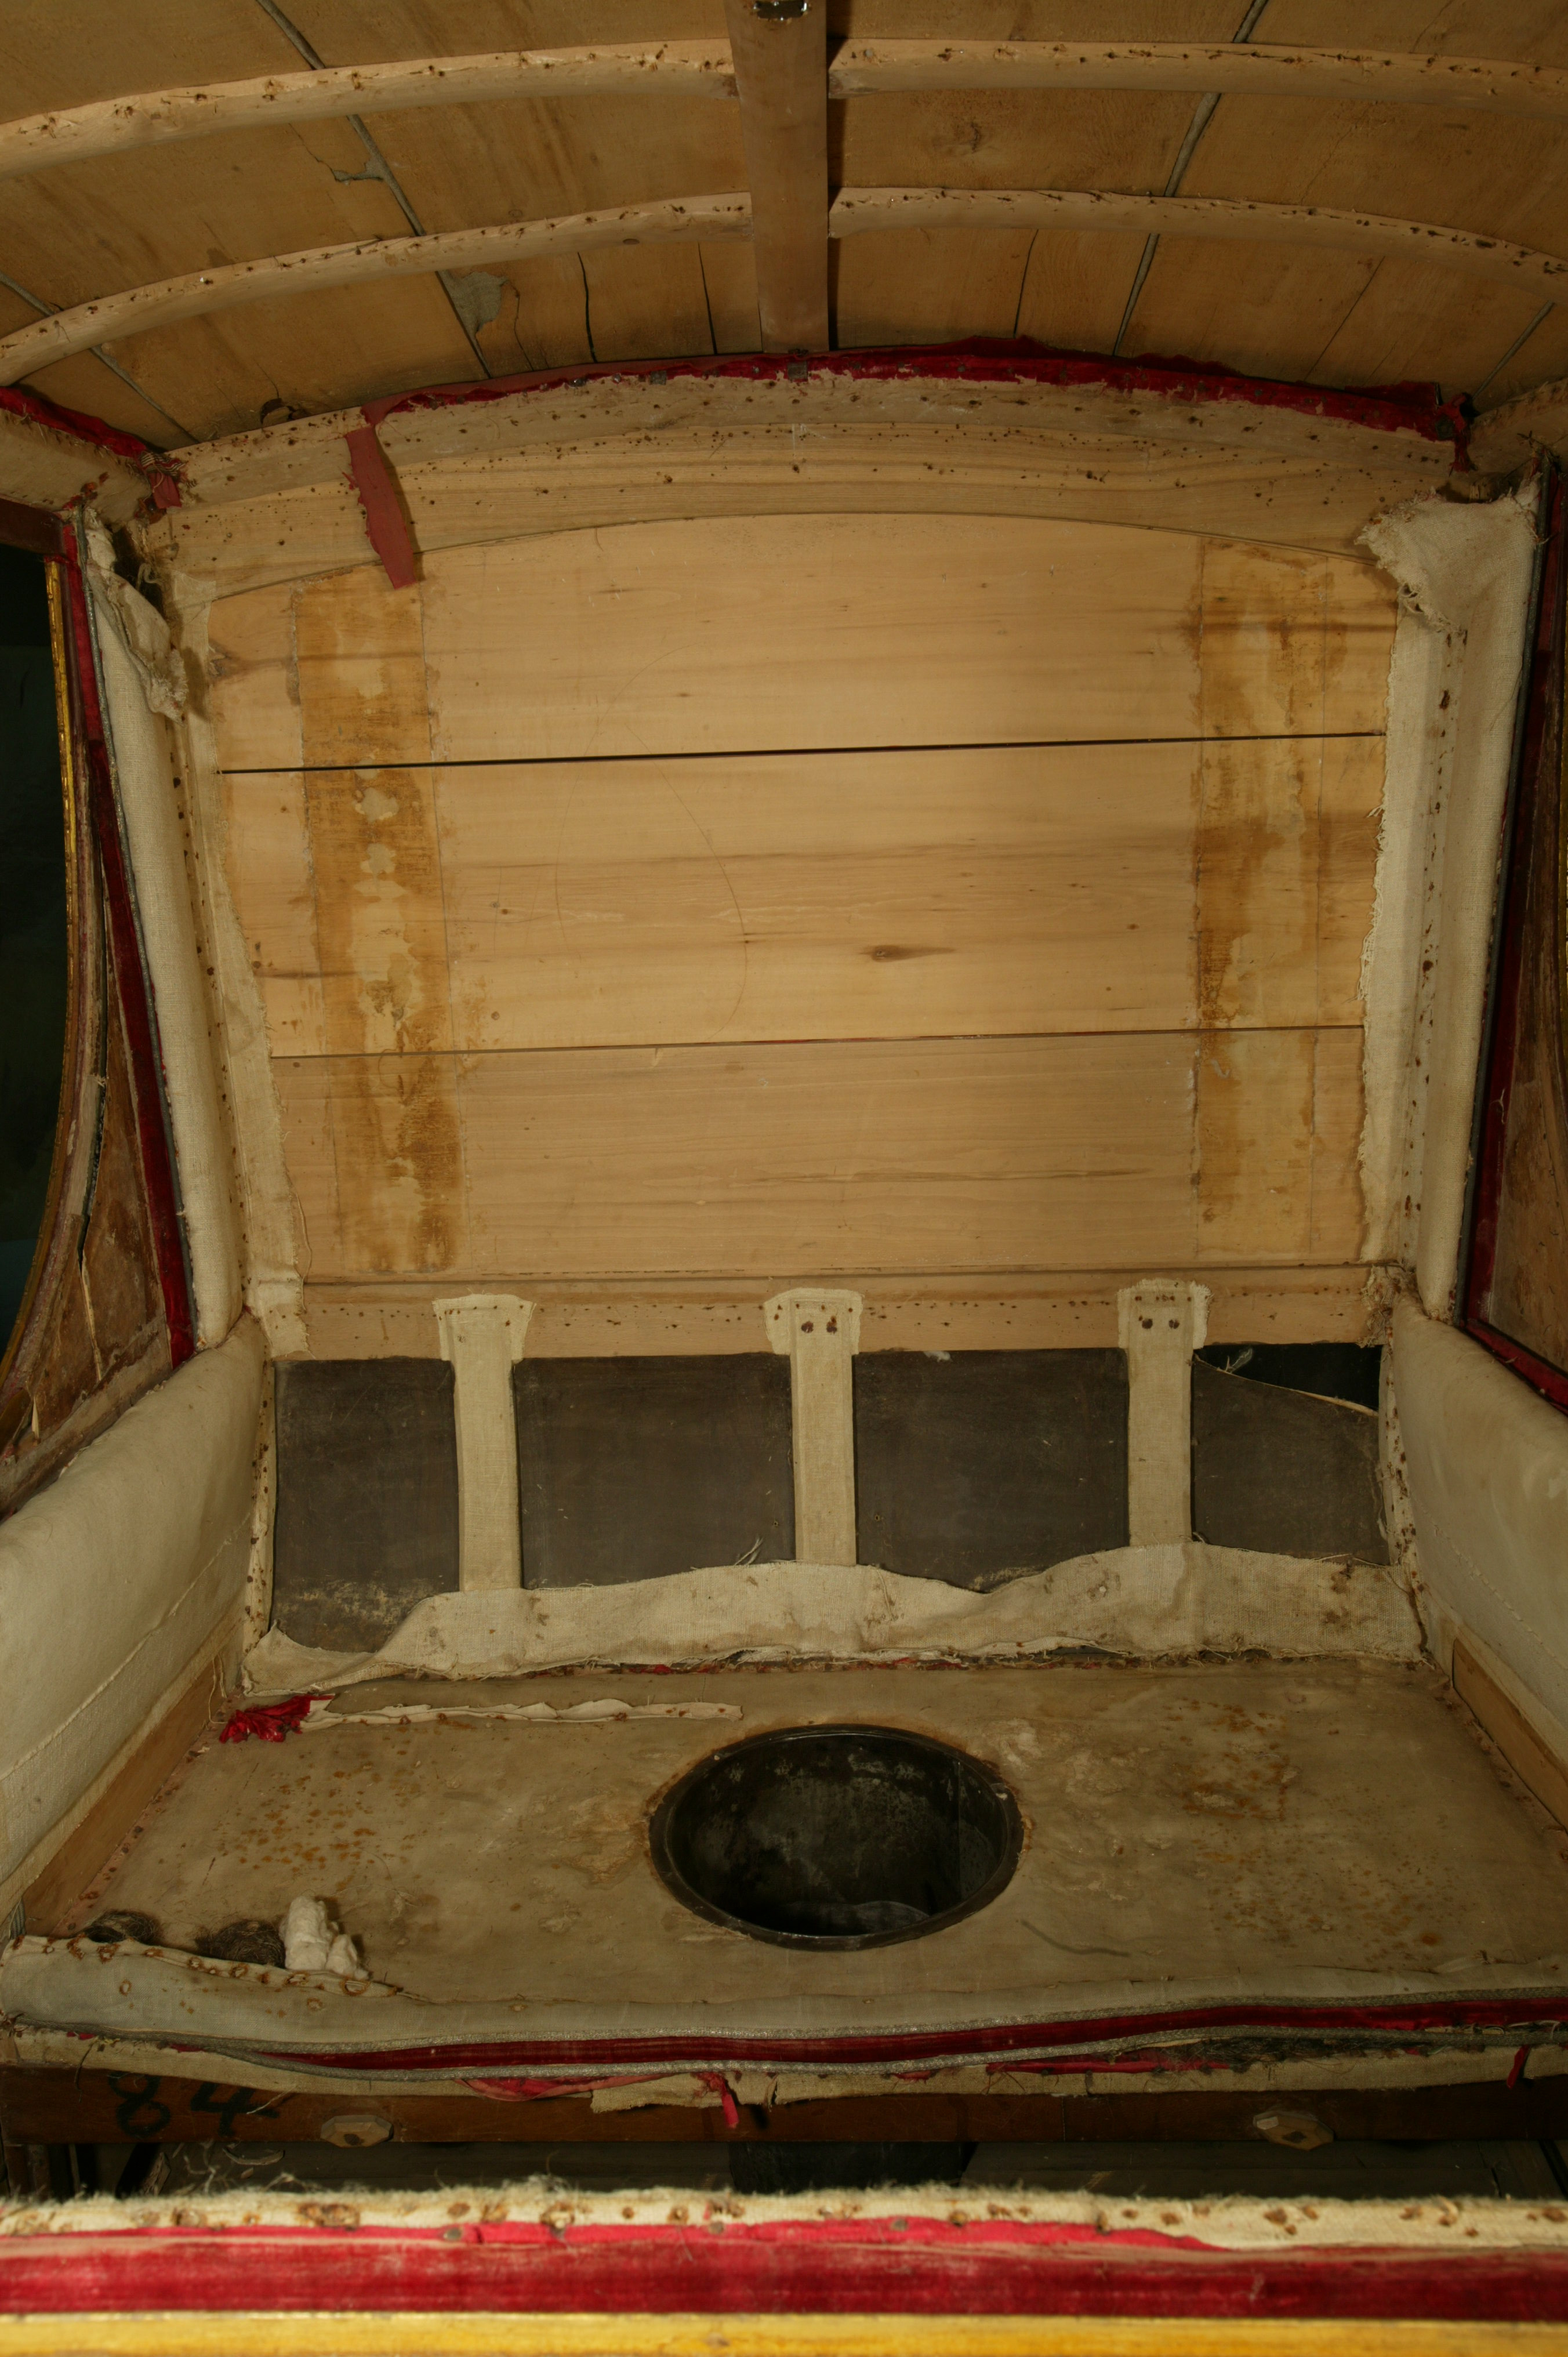 Салон кузова кареты в процессе реставрации. В центре конструкции сидения – дорожный туалет. 2008 